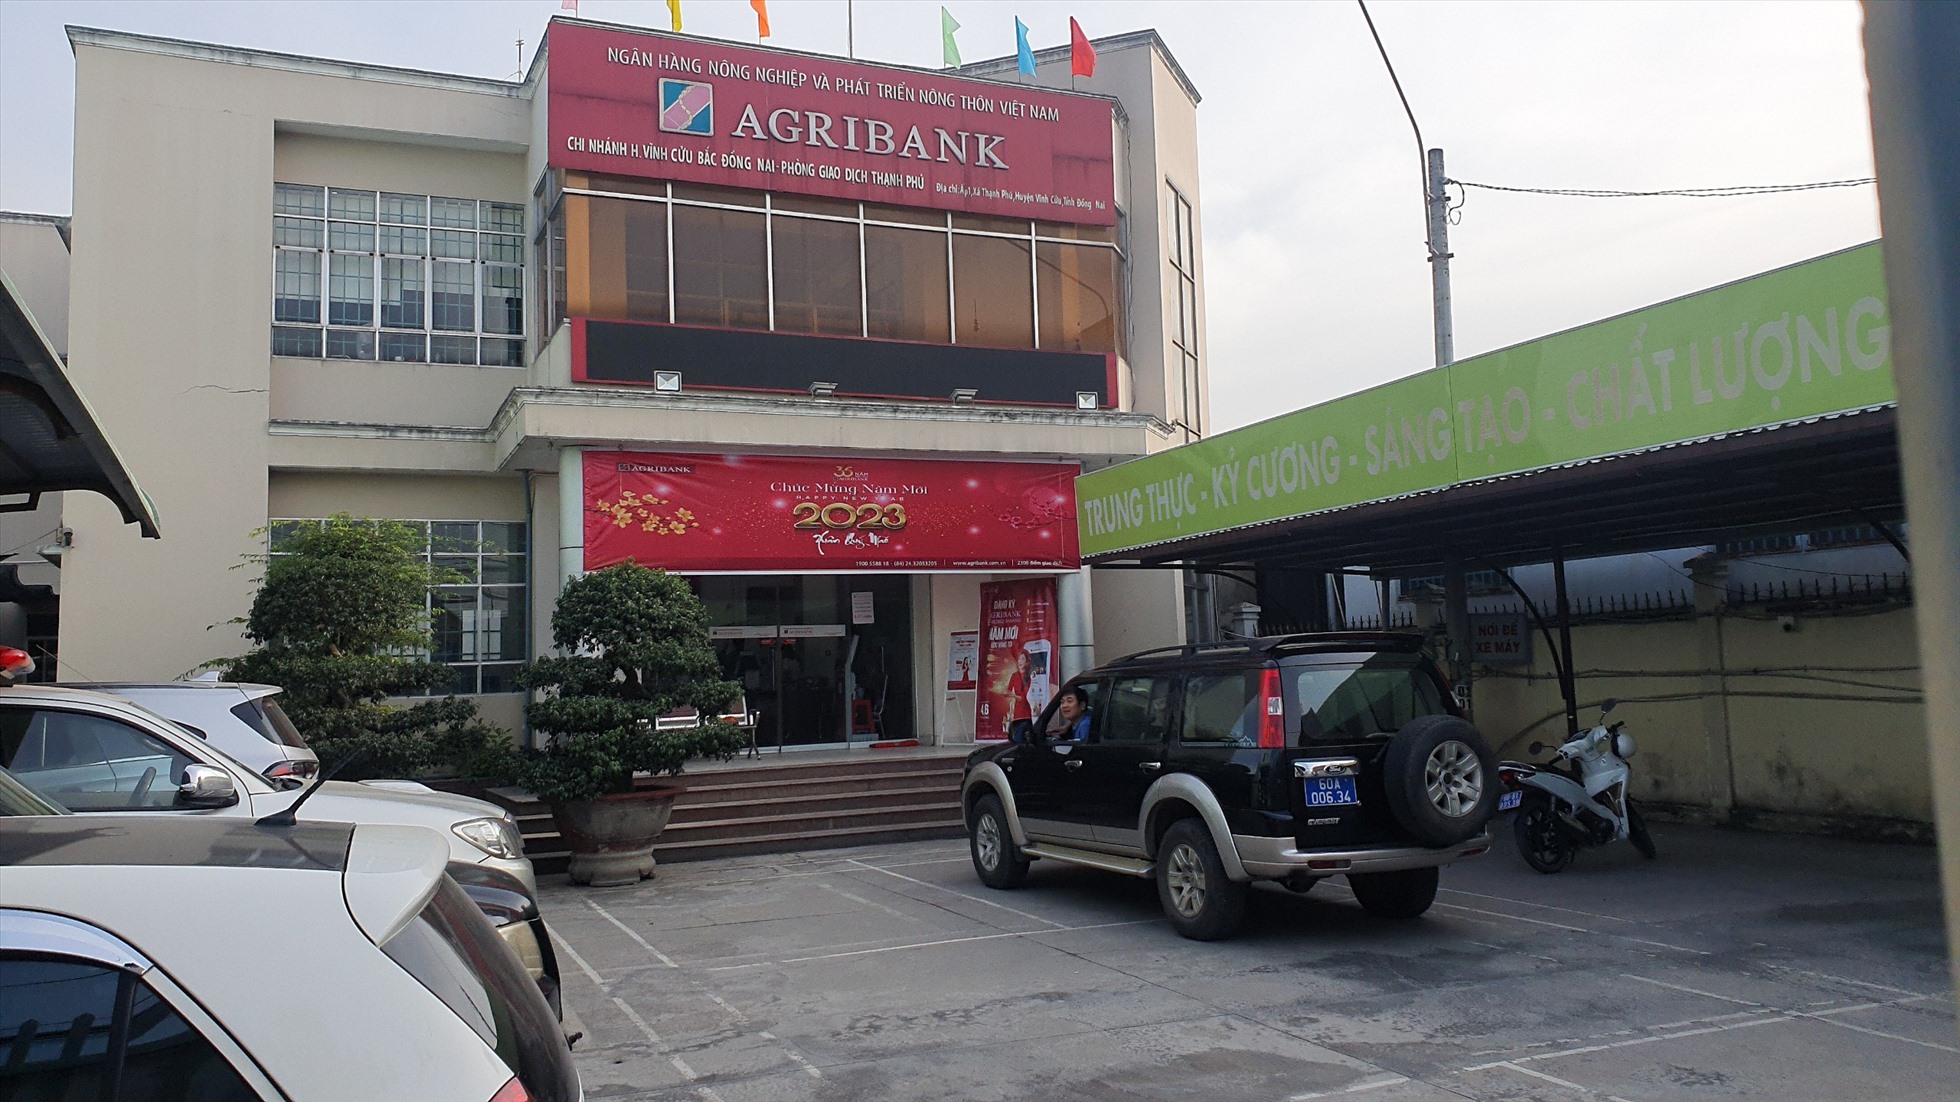 Hiện trường vụ cướp ngân hàng Nông nghiệp và Phát triển Nông thôn (Agribank) tại xã Thạnh Phú, huyện Vĩnh Cửu. Ảnh: Hà Anh Chiến